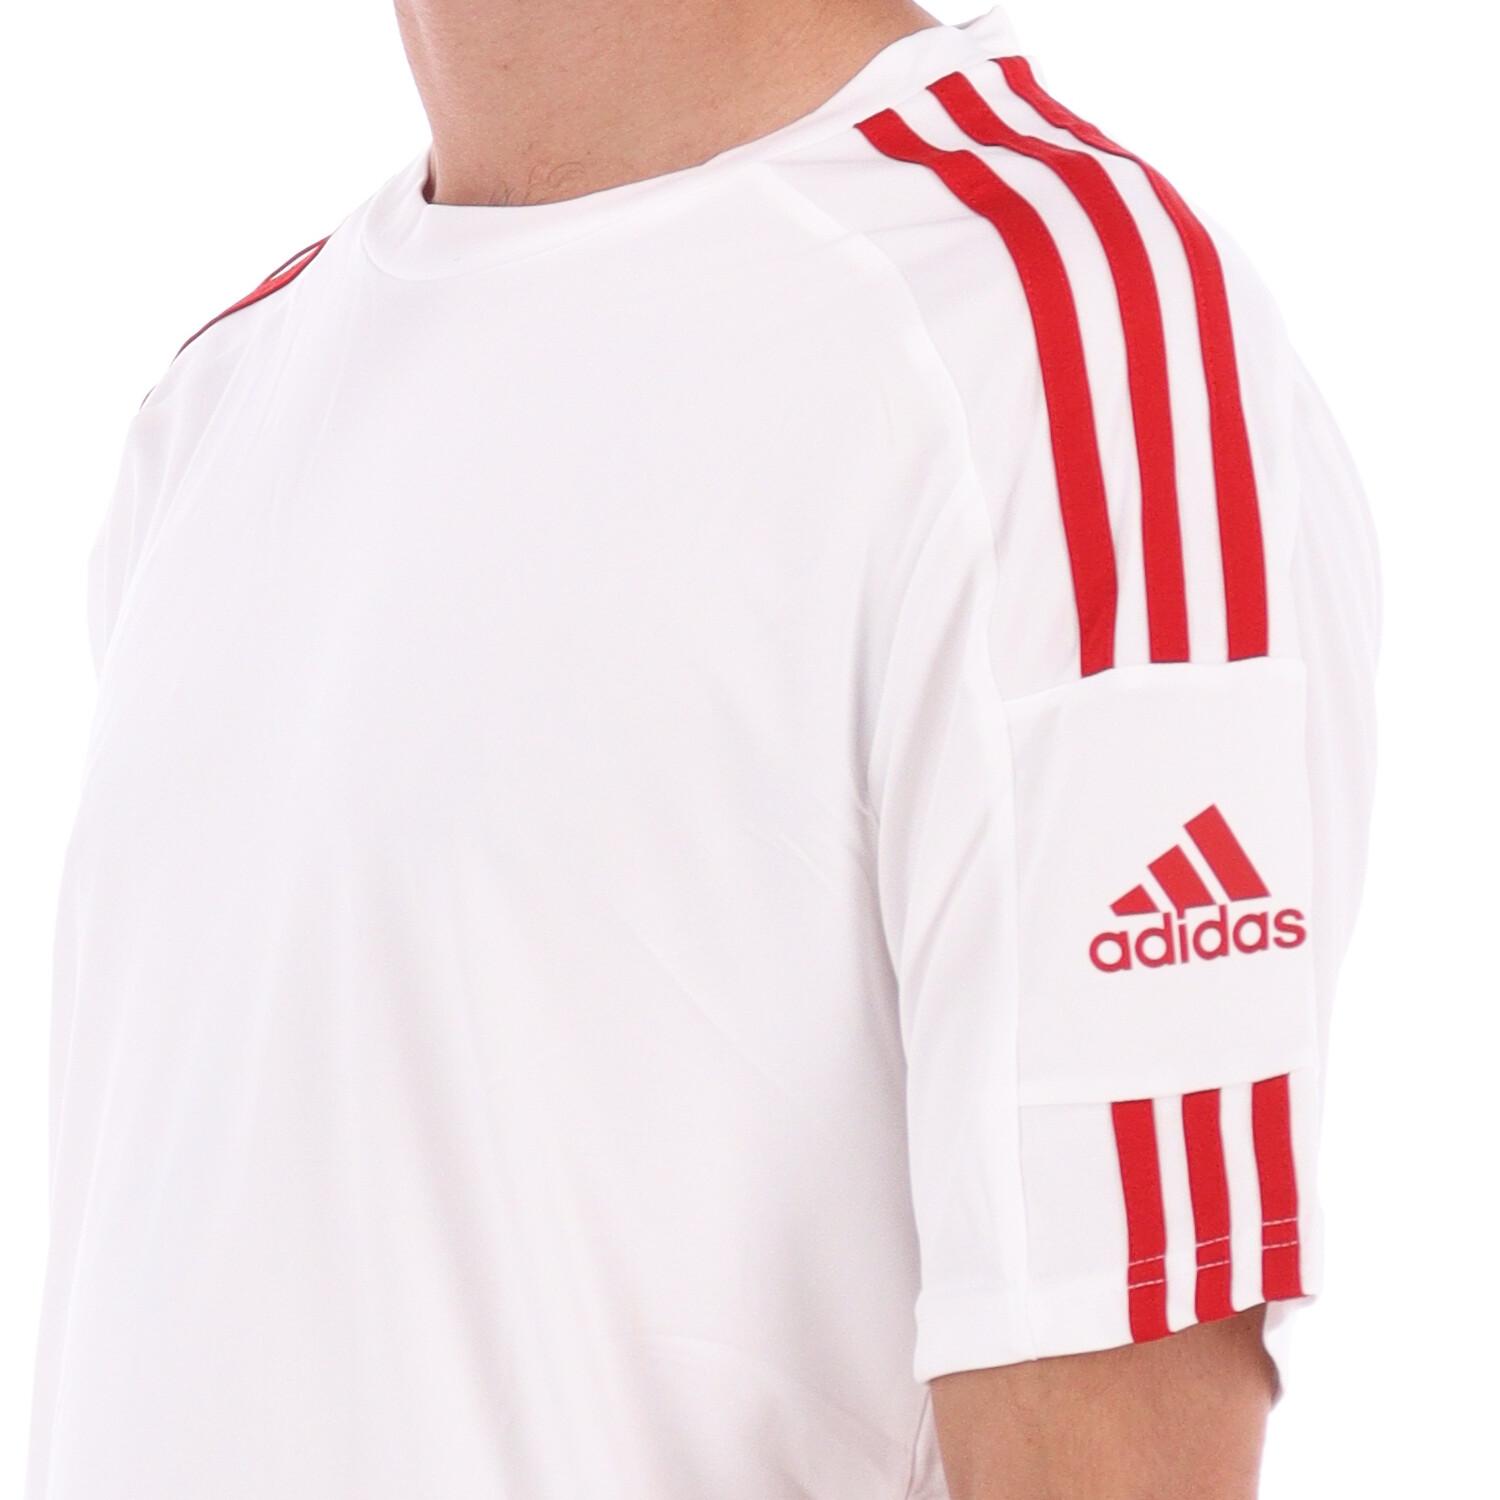 Adidas T-shirt Adidas Squadra 21 WHITE RED 